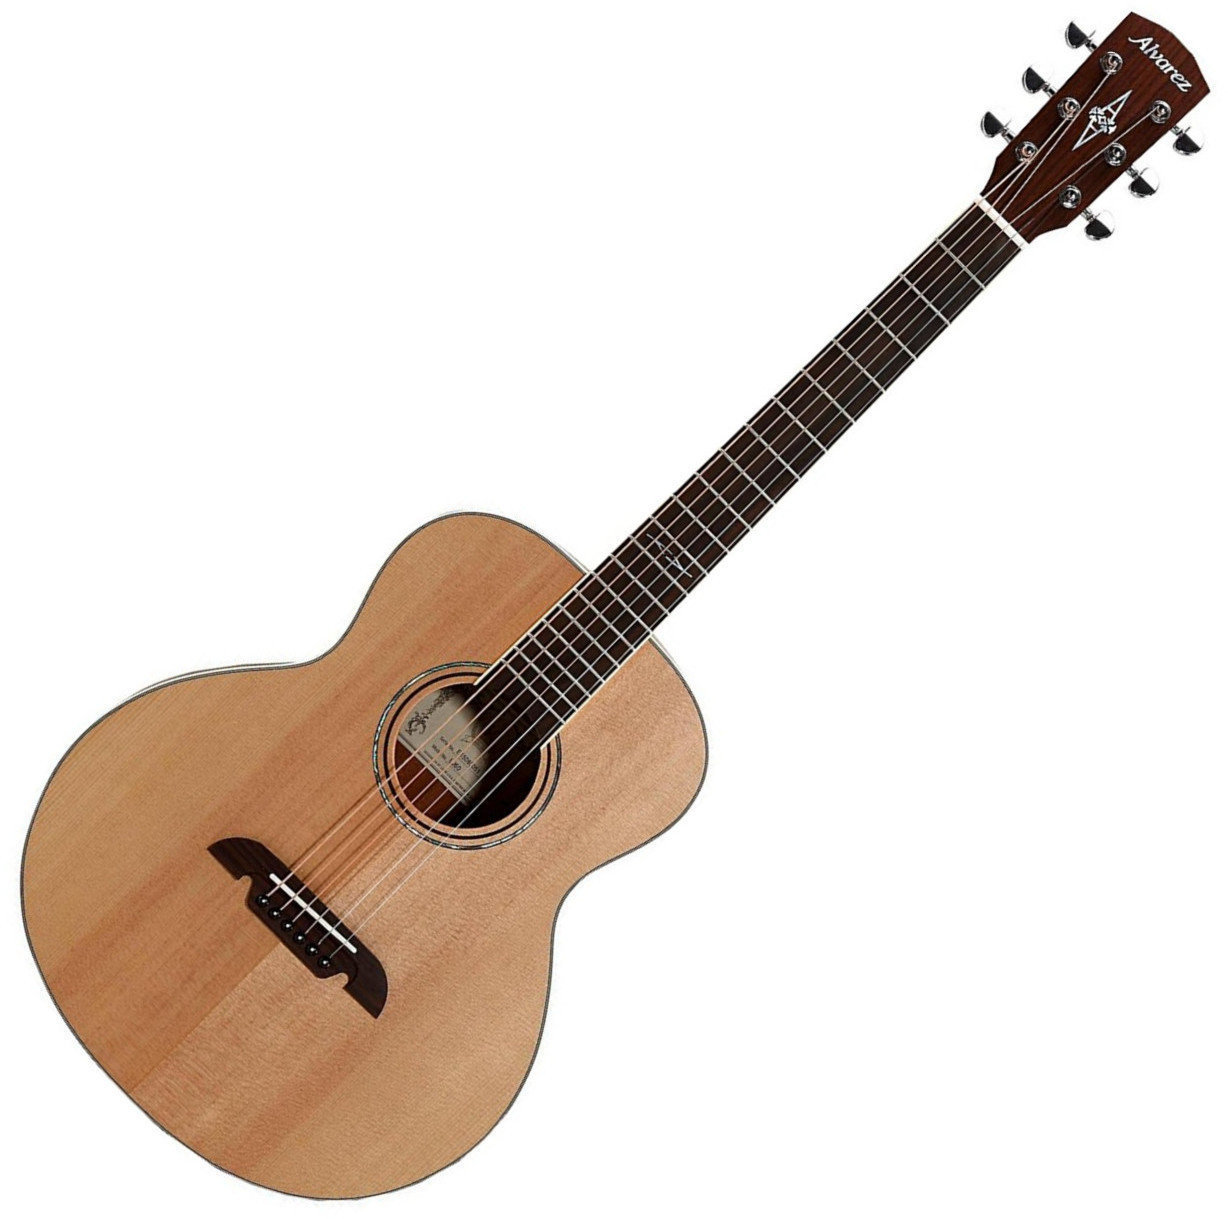 Ακουστική Κιθάρα Jumbo Alvarez LJ60 Little Jumbo Travel Guitars/Gigbag